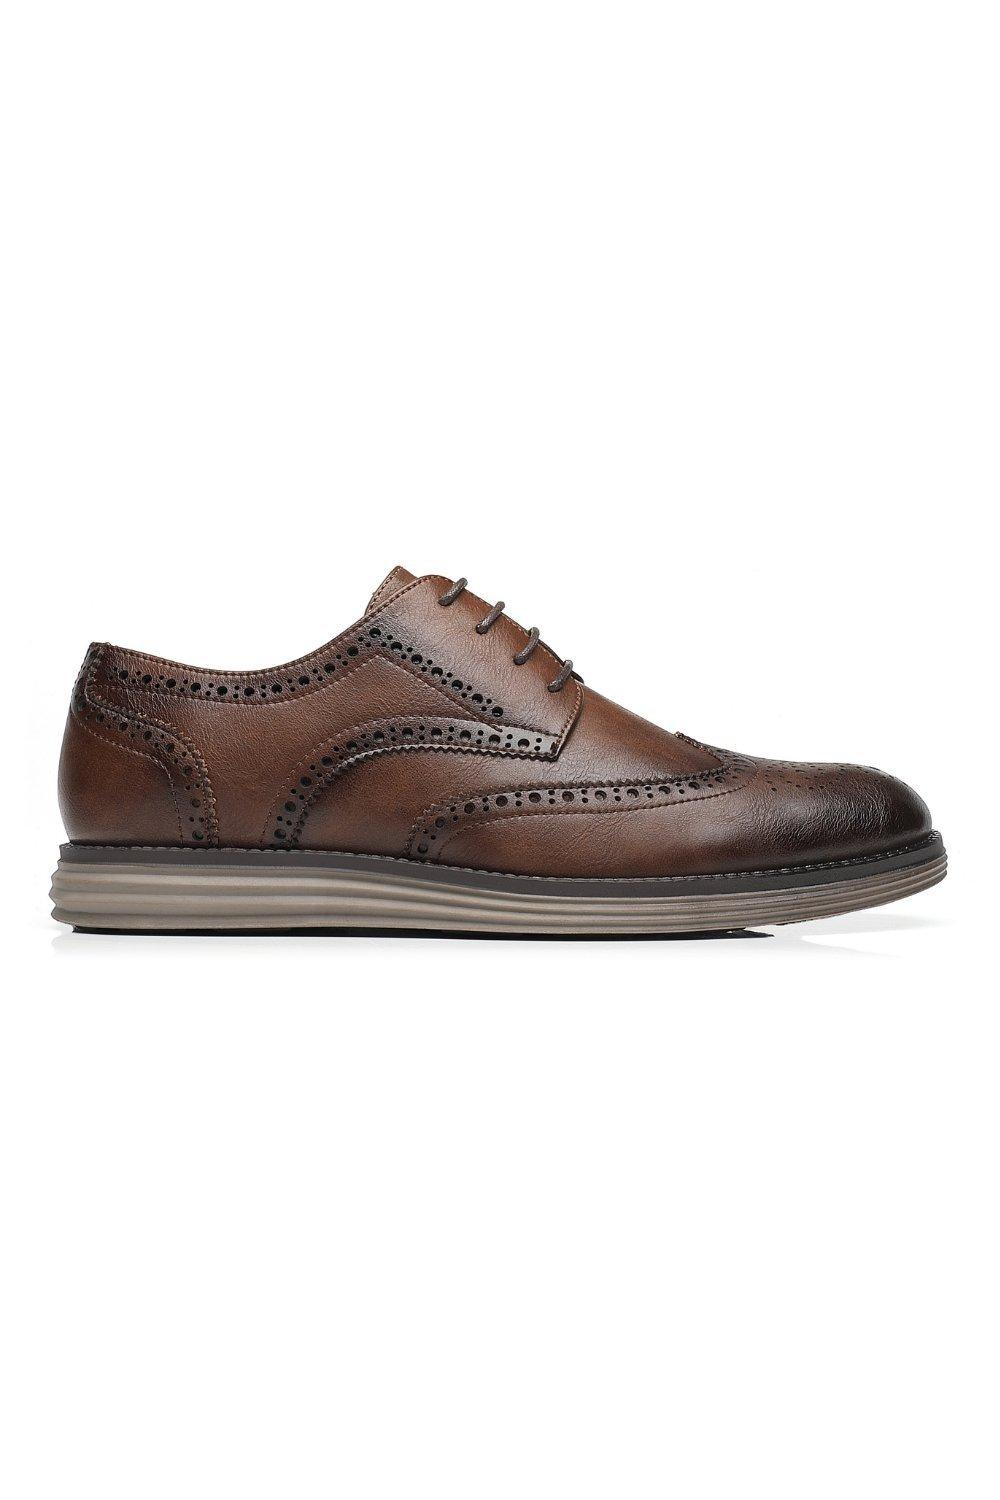 Кожаные деловые туфли на шнуровке в стиле смарт-офис TOP STAKA SHOES, коричневый мужские кожаные деловые туфли на шнуровке для офиса зеленый